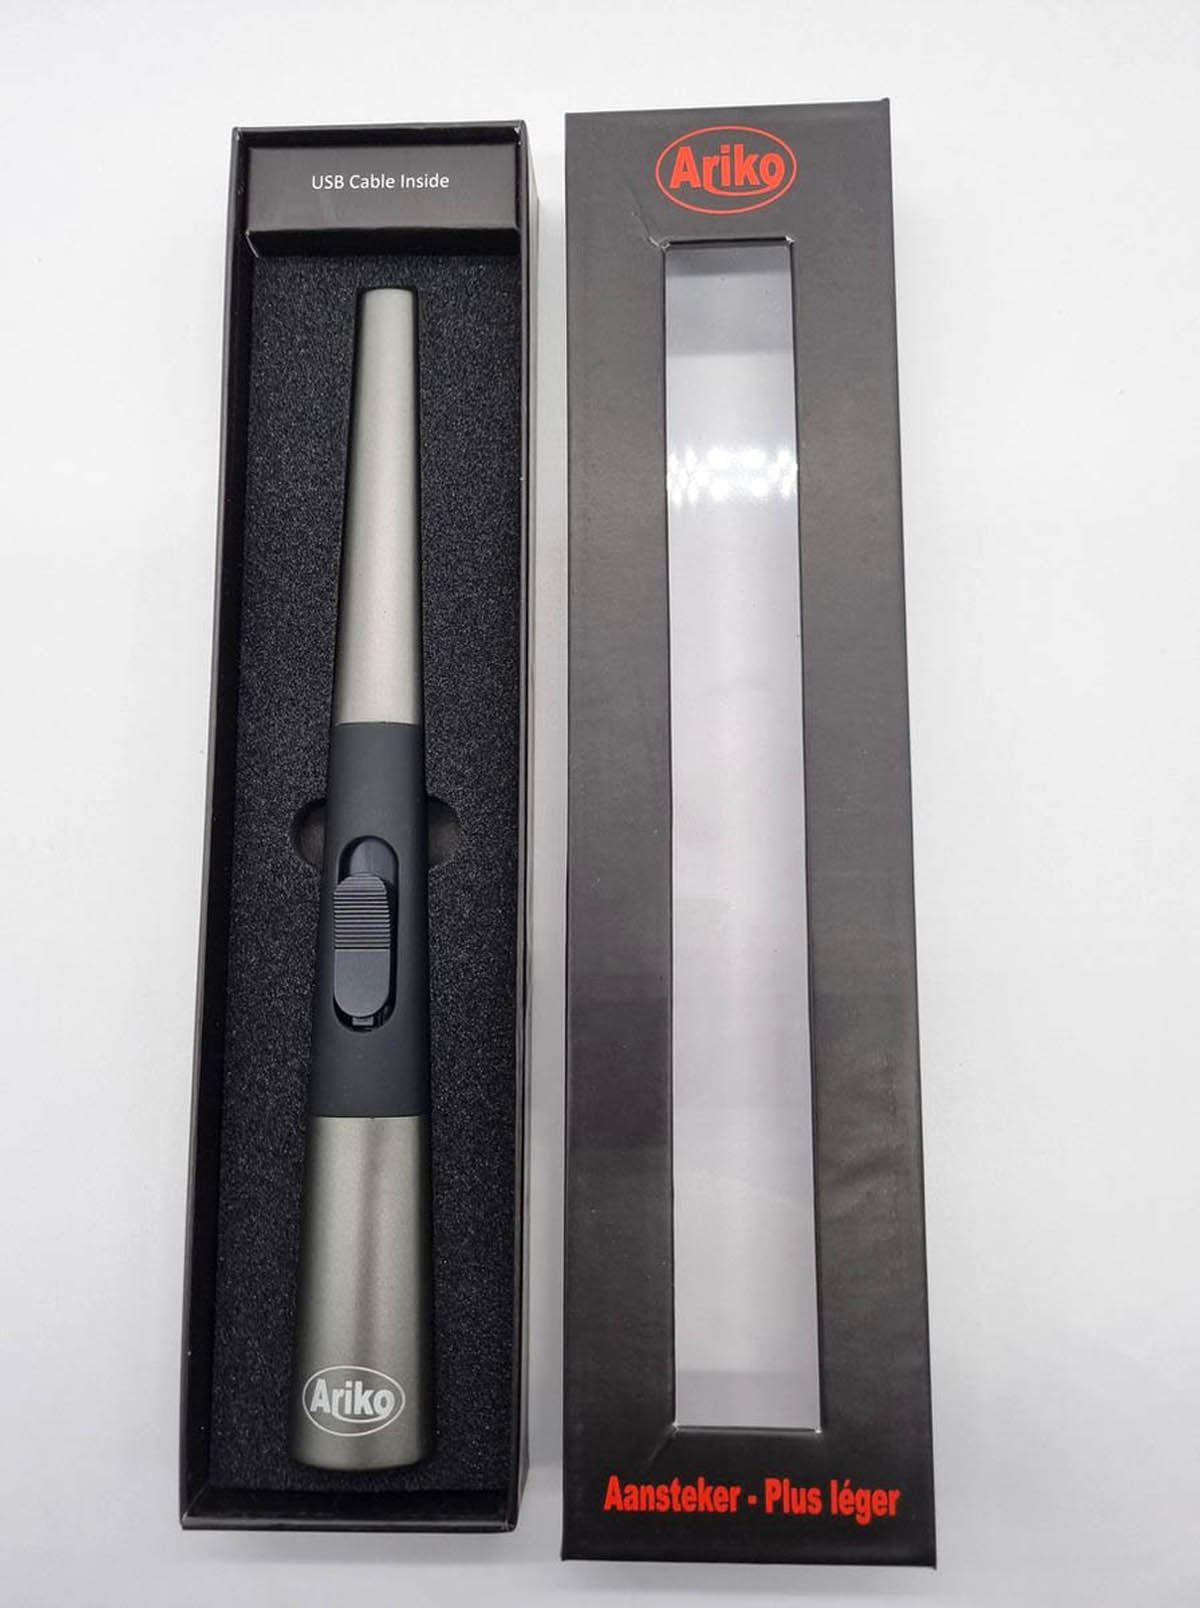 Ariko Luxus-Plasmalichtbogen-Feuerzeug (Silber) in Geschenkbox|USB wiederaufladbar| Flammenloses elektrisches Feuerzeug für Küche, Kerze, Grill oder Kamin| Innen und außen | Schickes Design